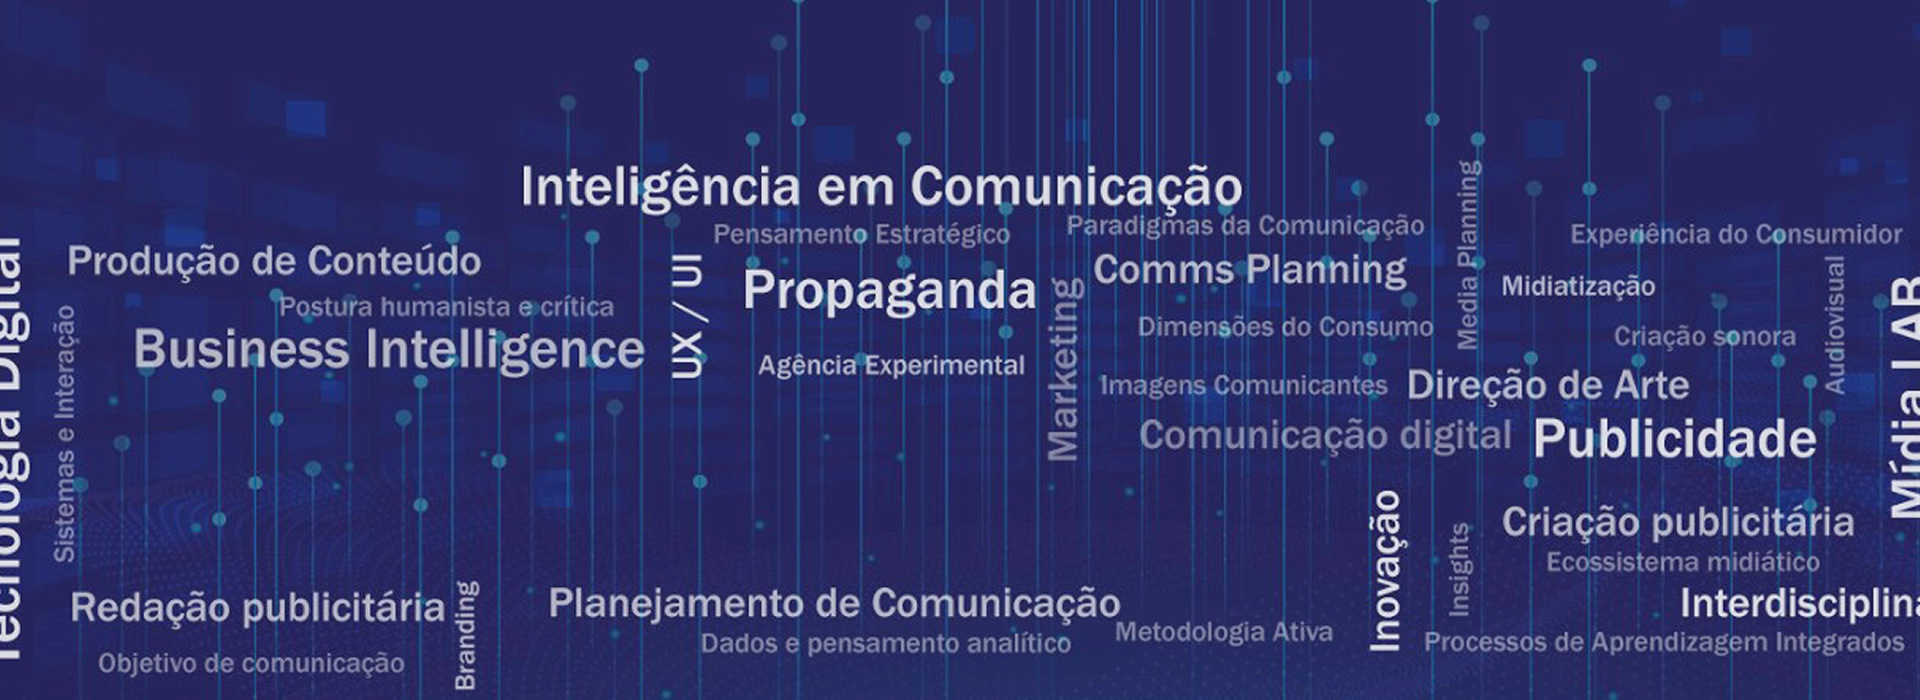 Fundo azul escuro com as palavras "inteligência em comunicação, propaganda, comms planning, ux/ui, marketing, planejamento e comunicação, etc...